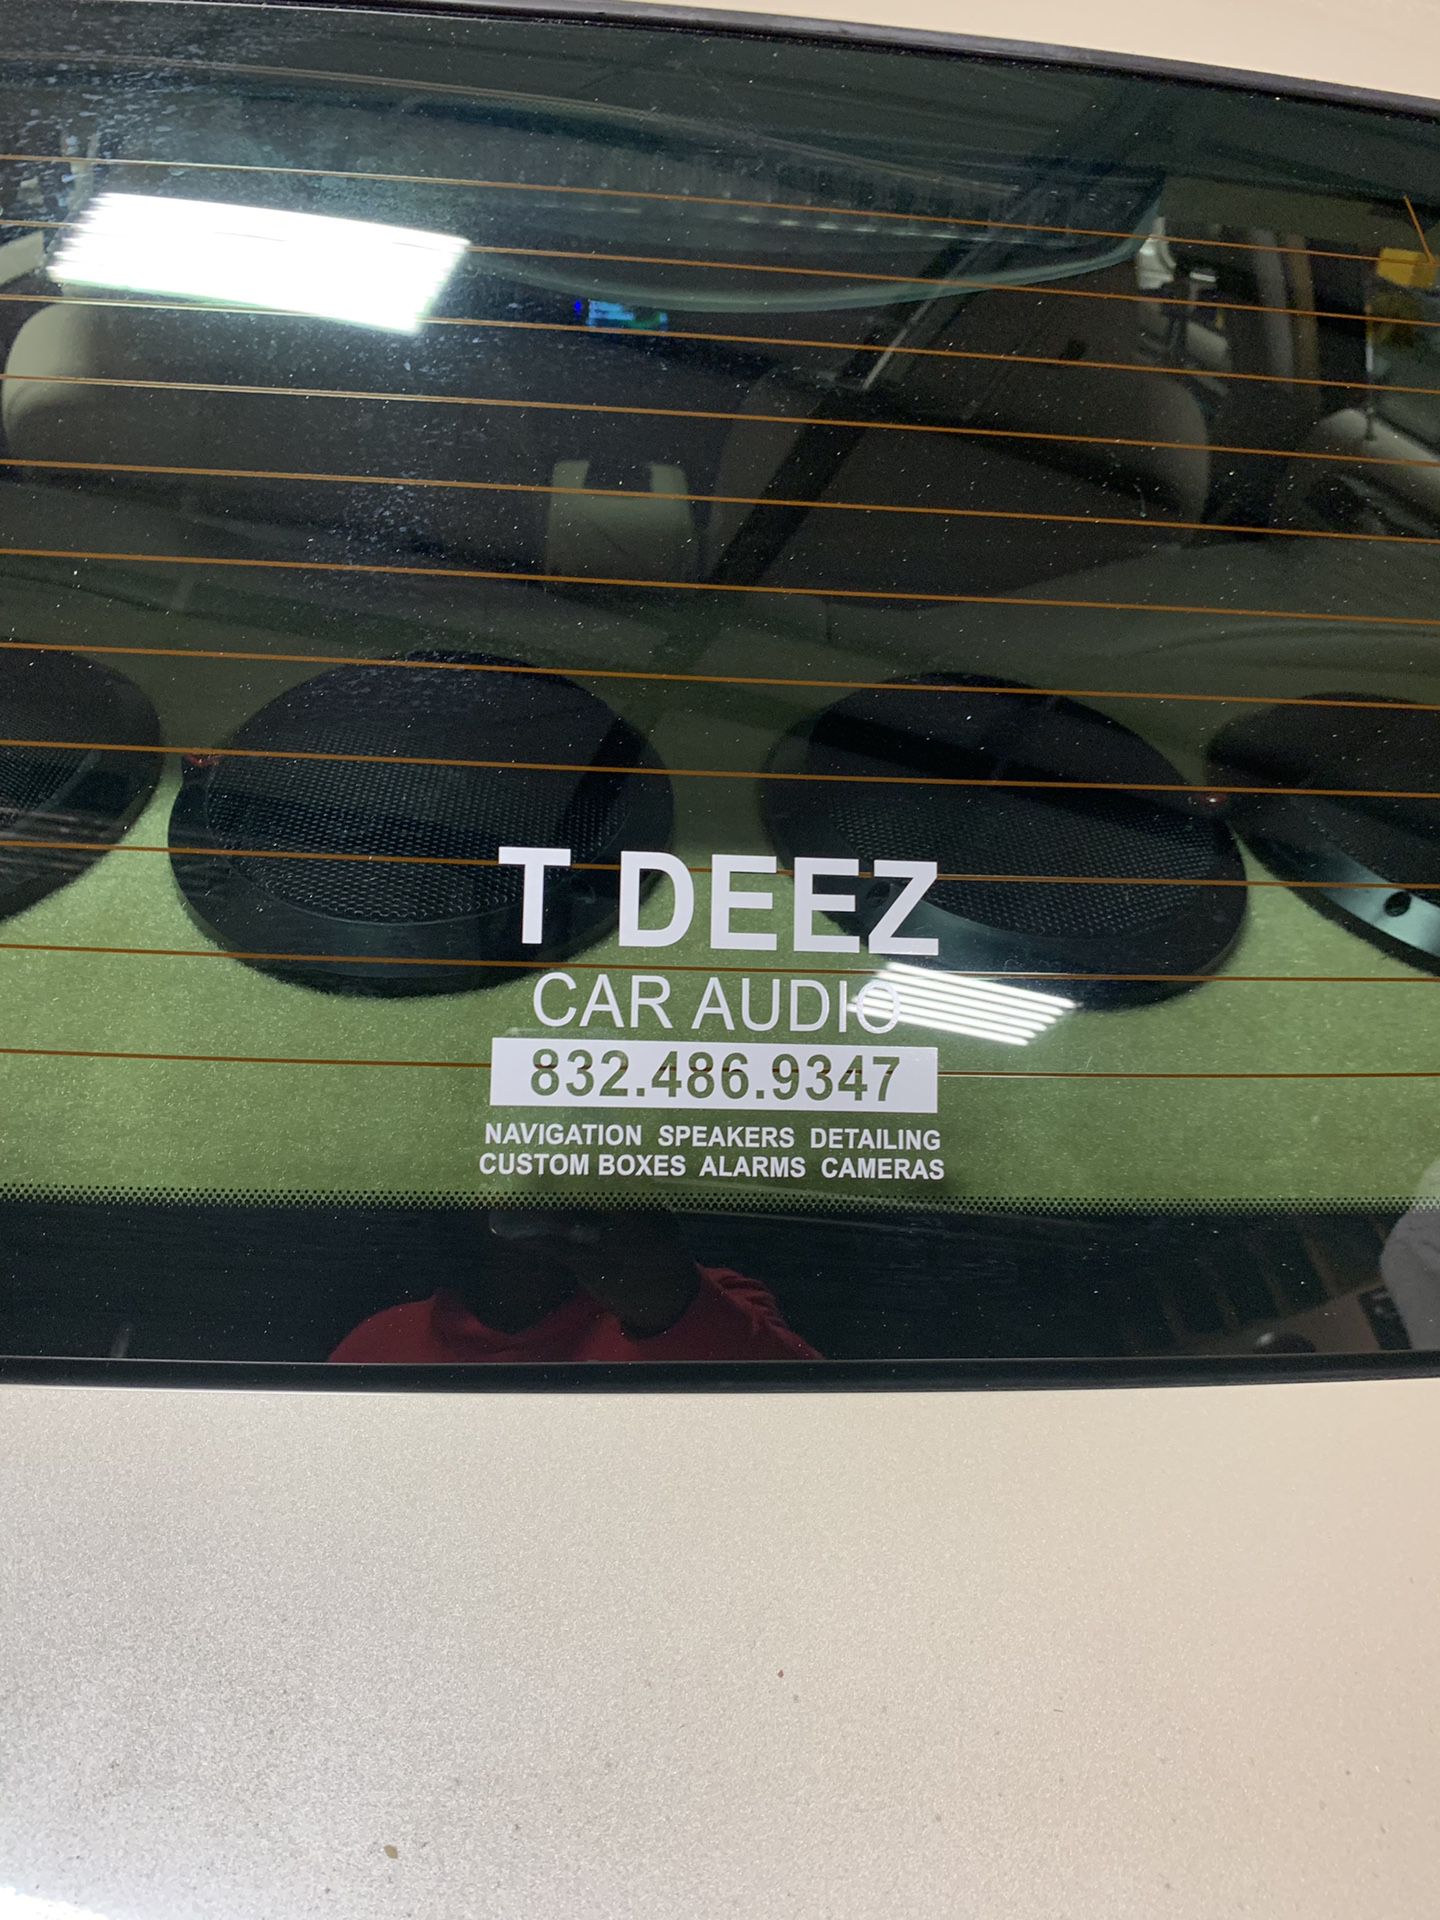 T Deez Car Audio